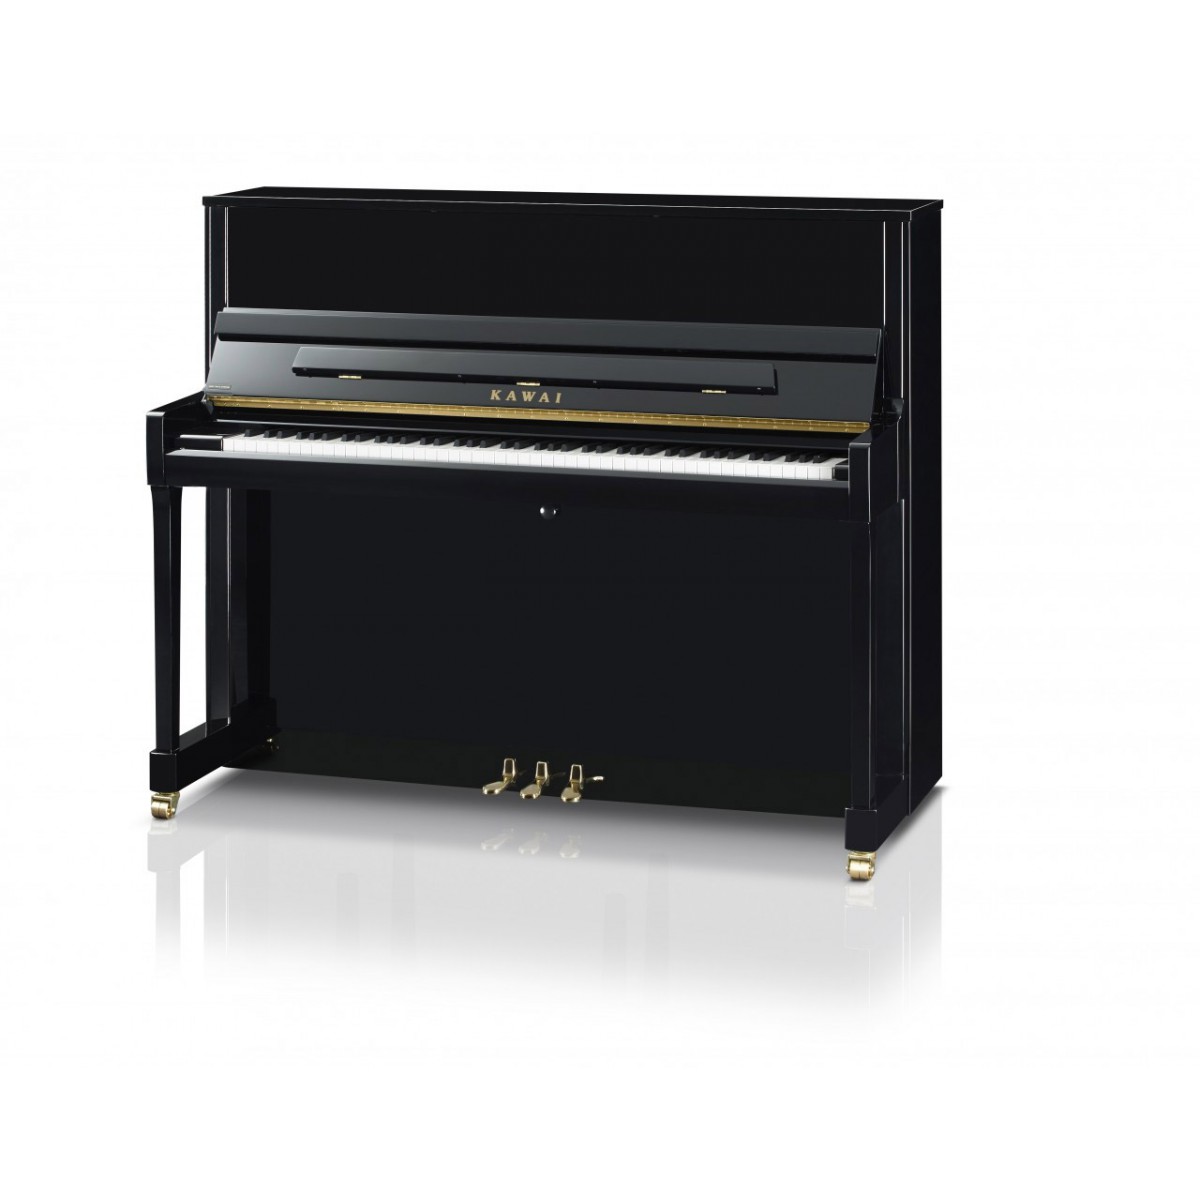 Kawai K-300 Klavier schwarz poliert